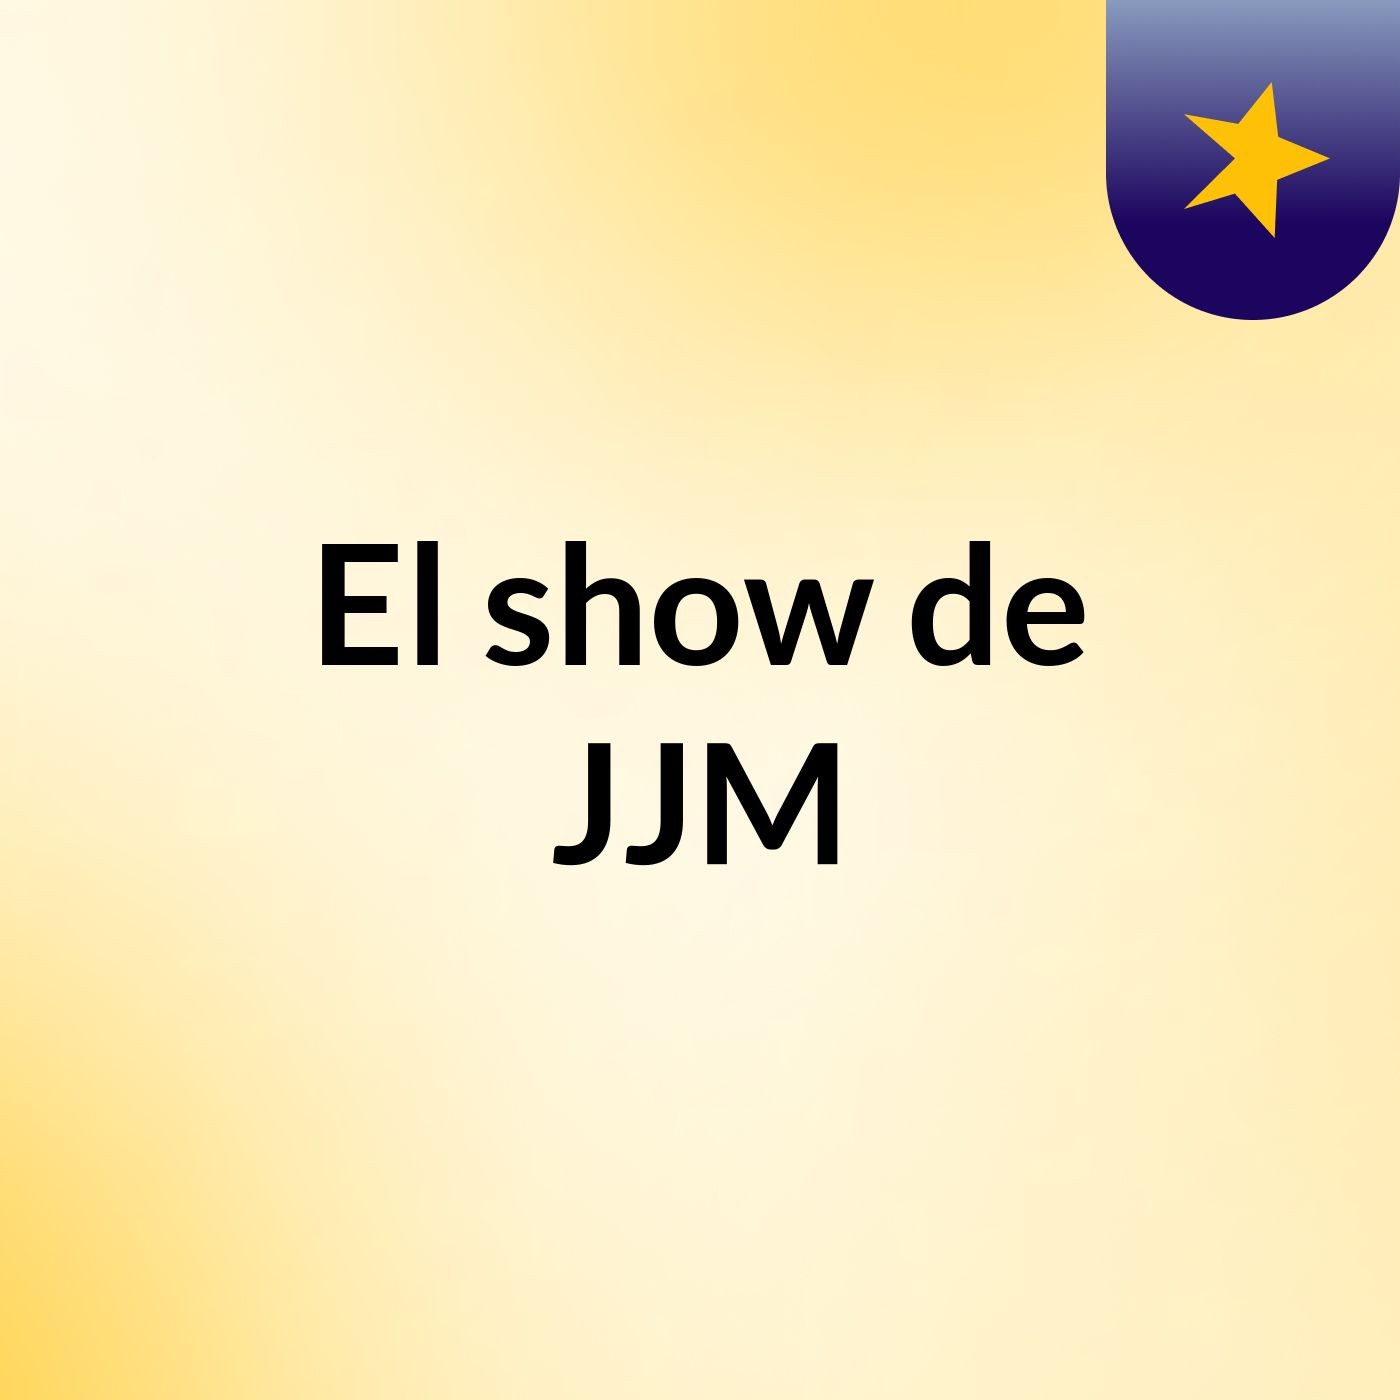 El show de JJM